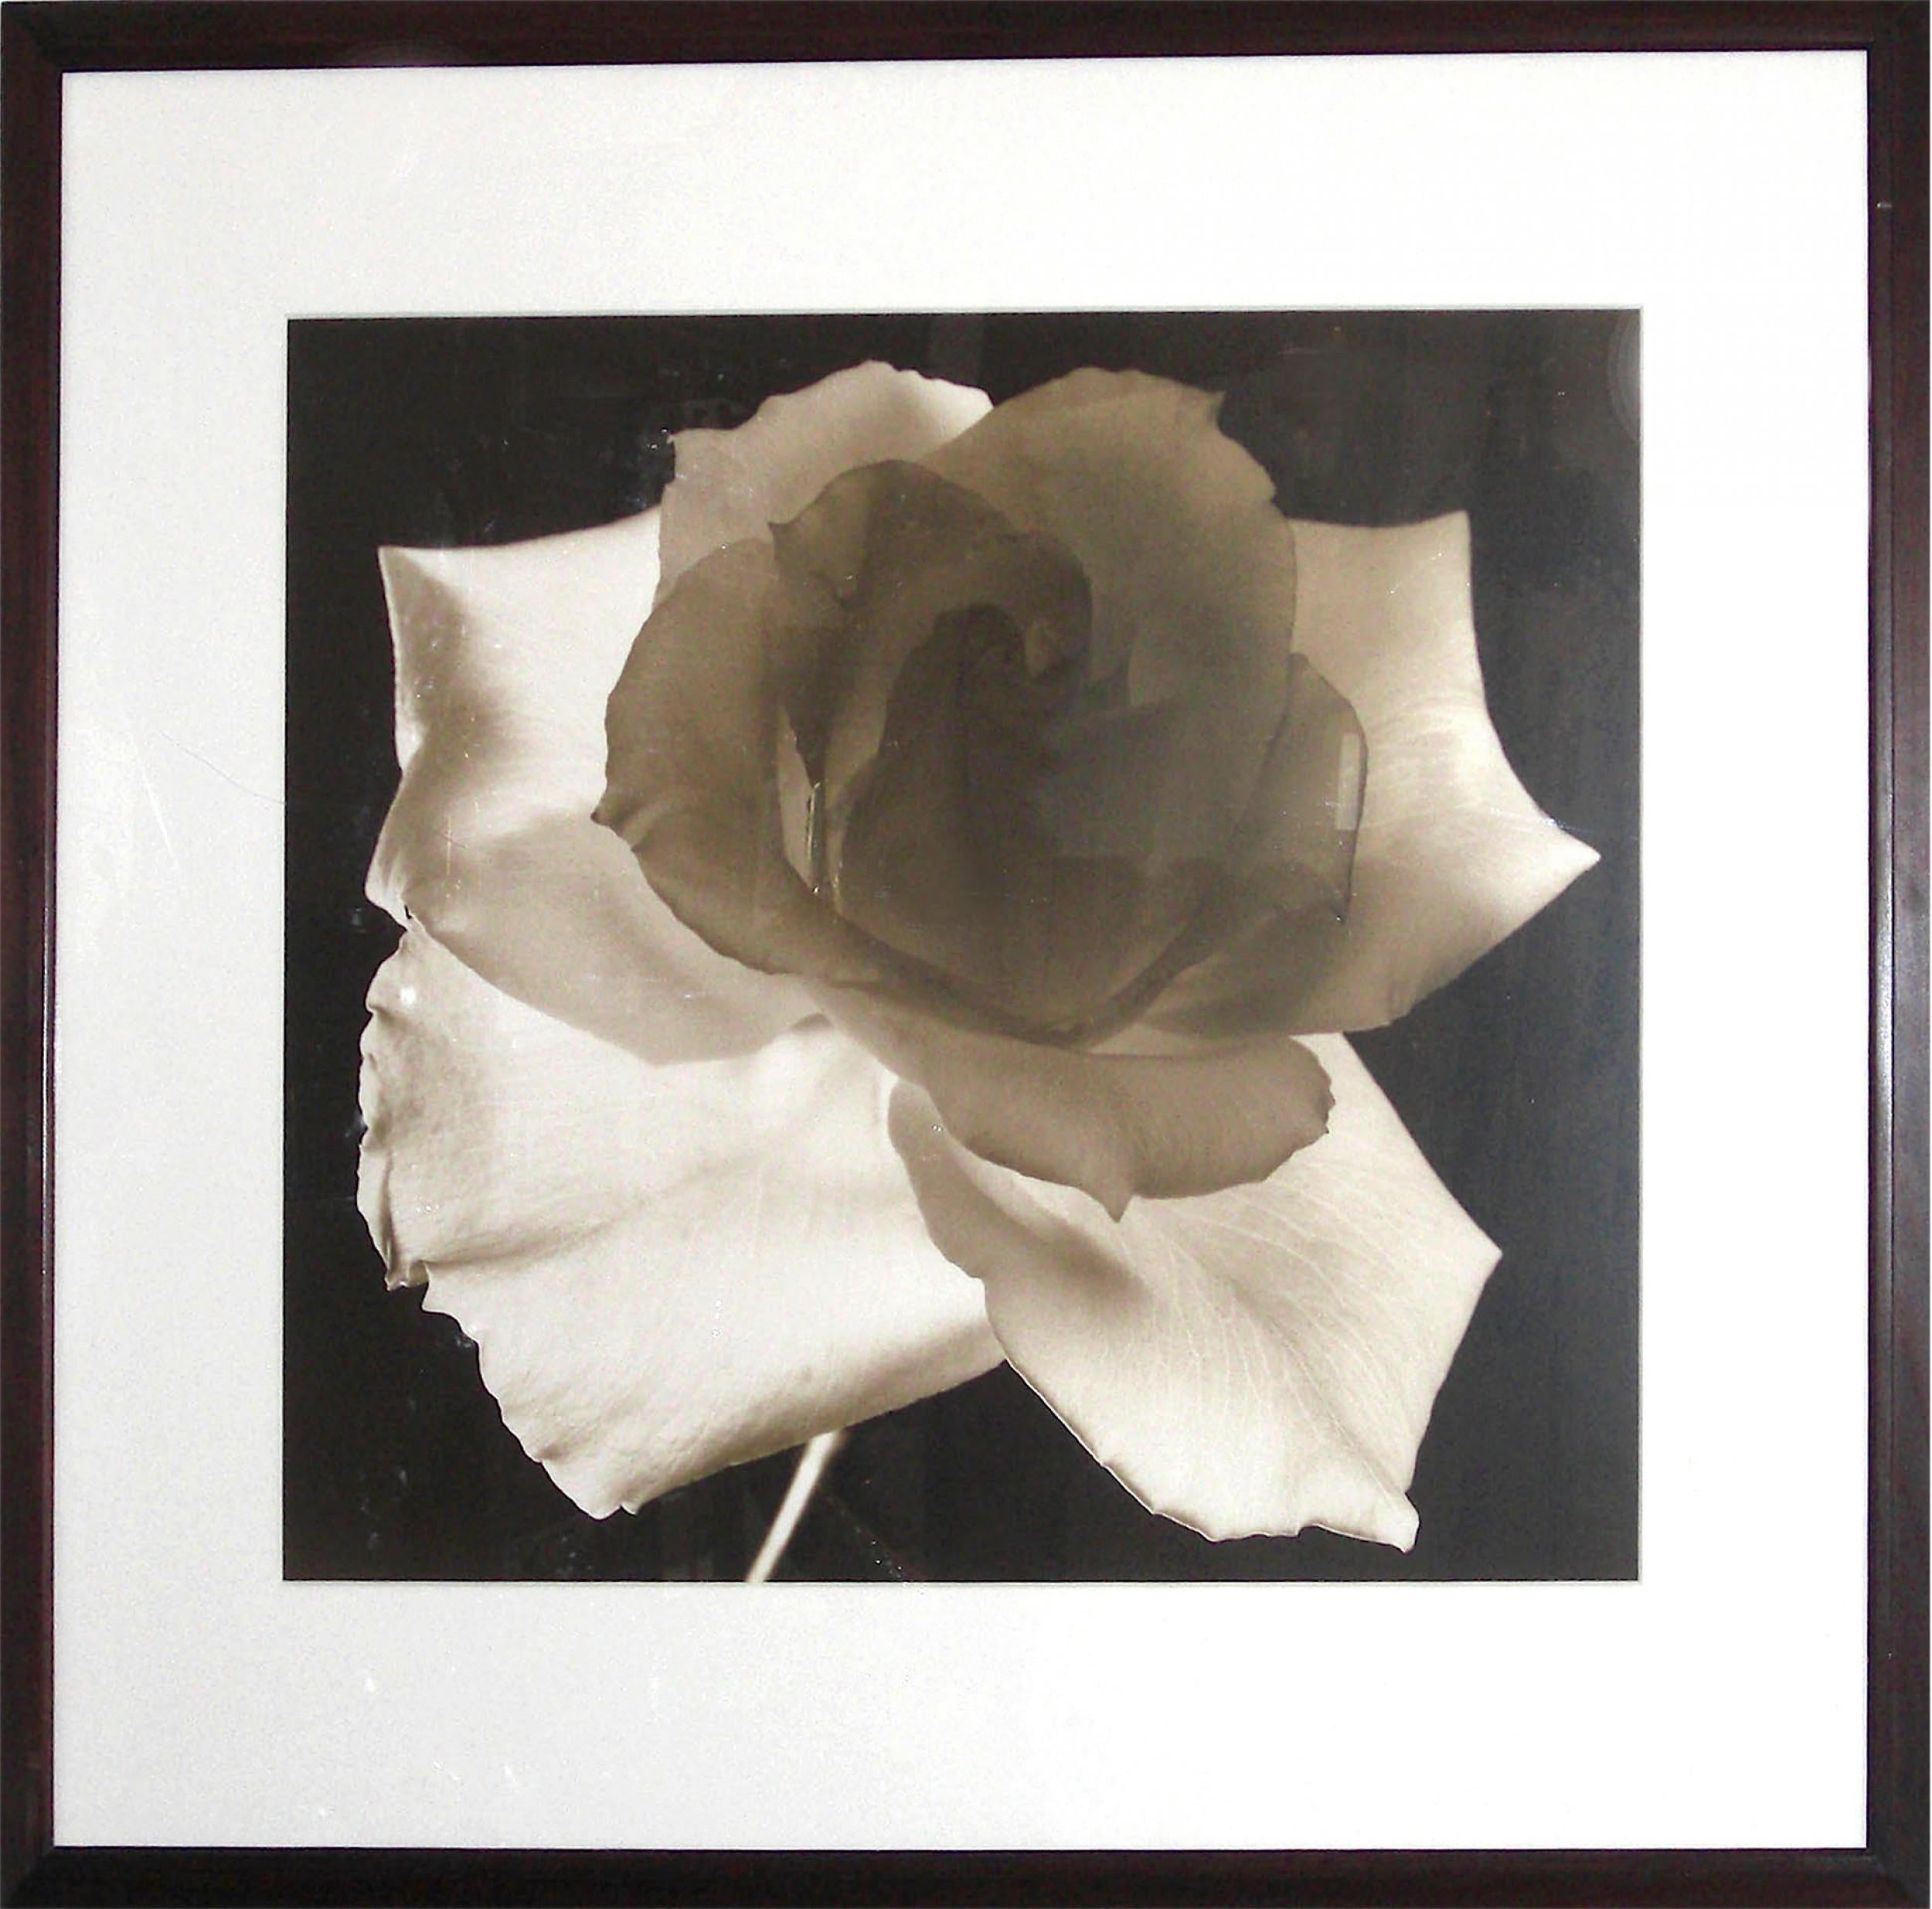 Agrandissement encadré en gélatine argentique à tonalité sépia représentant une rose en fleur. La photographie a été prise par l'artiste américain Frederic Ohringer (né en 1940), intitulée 